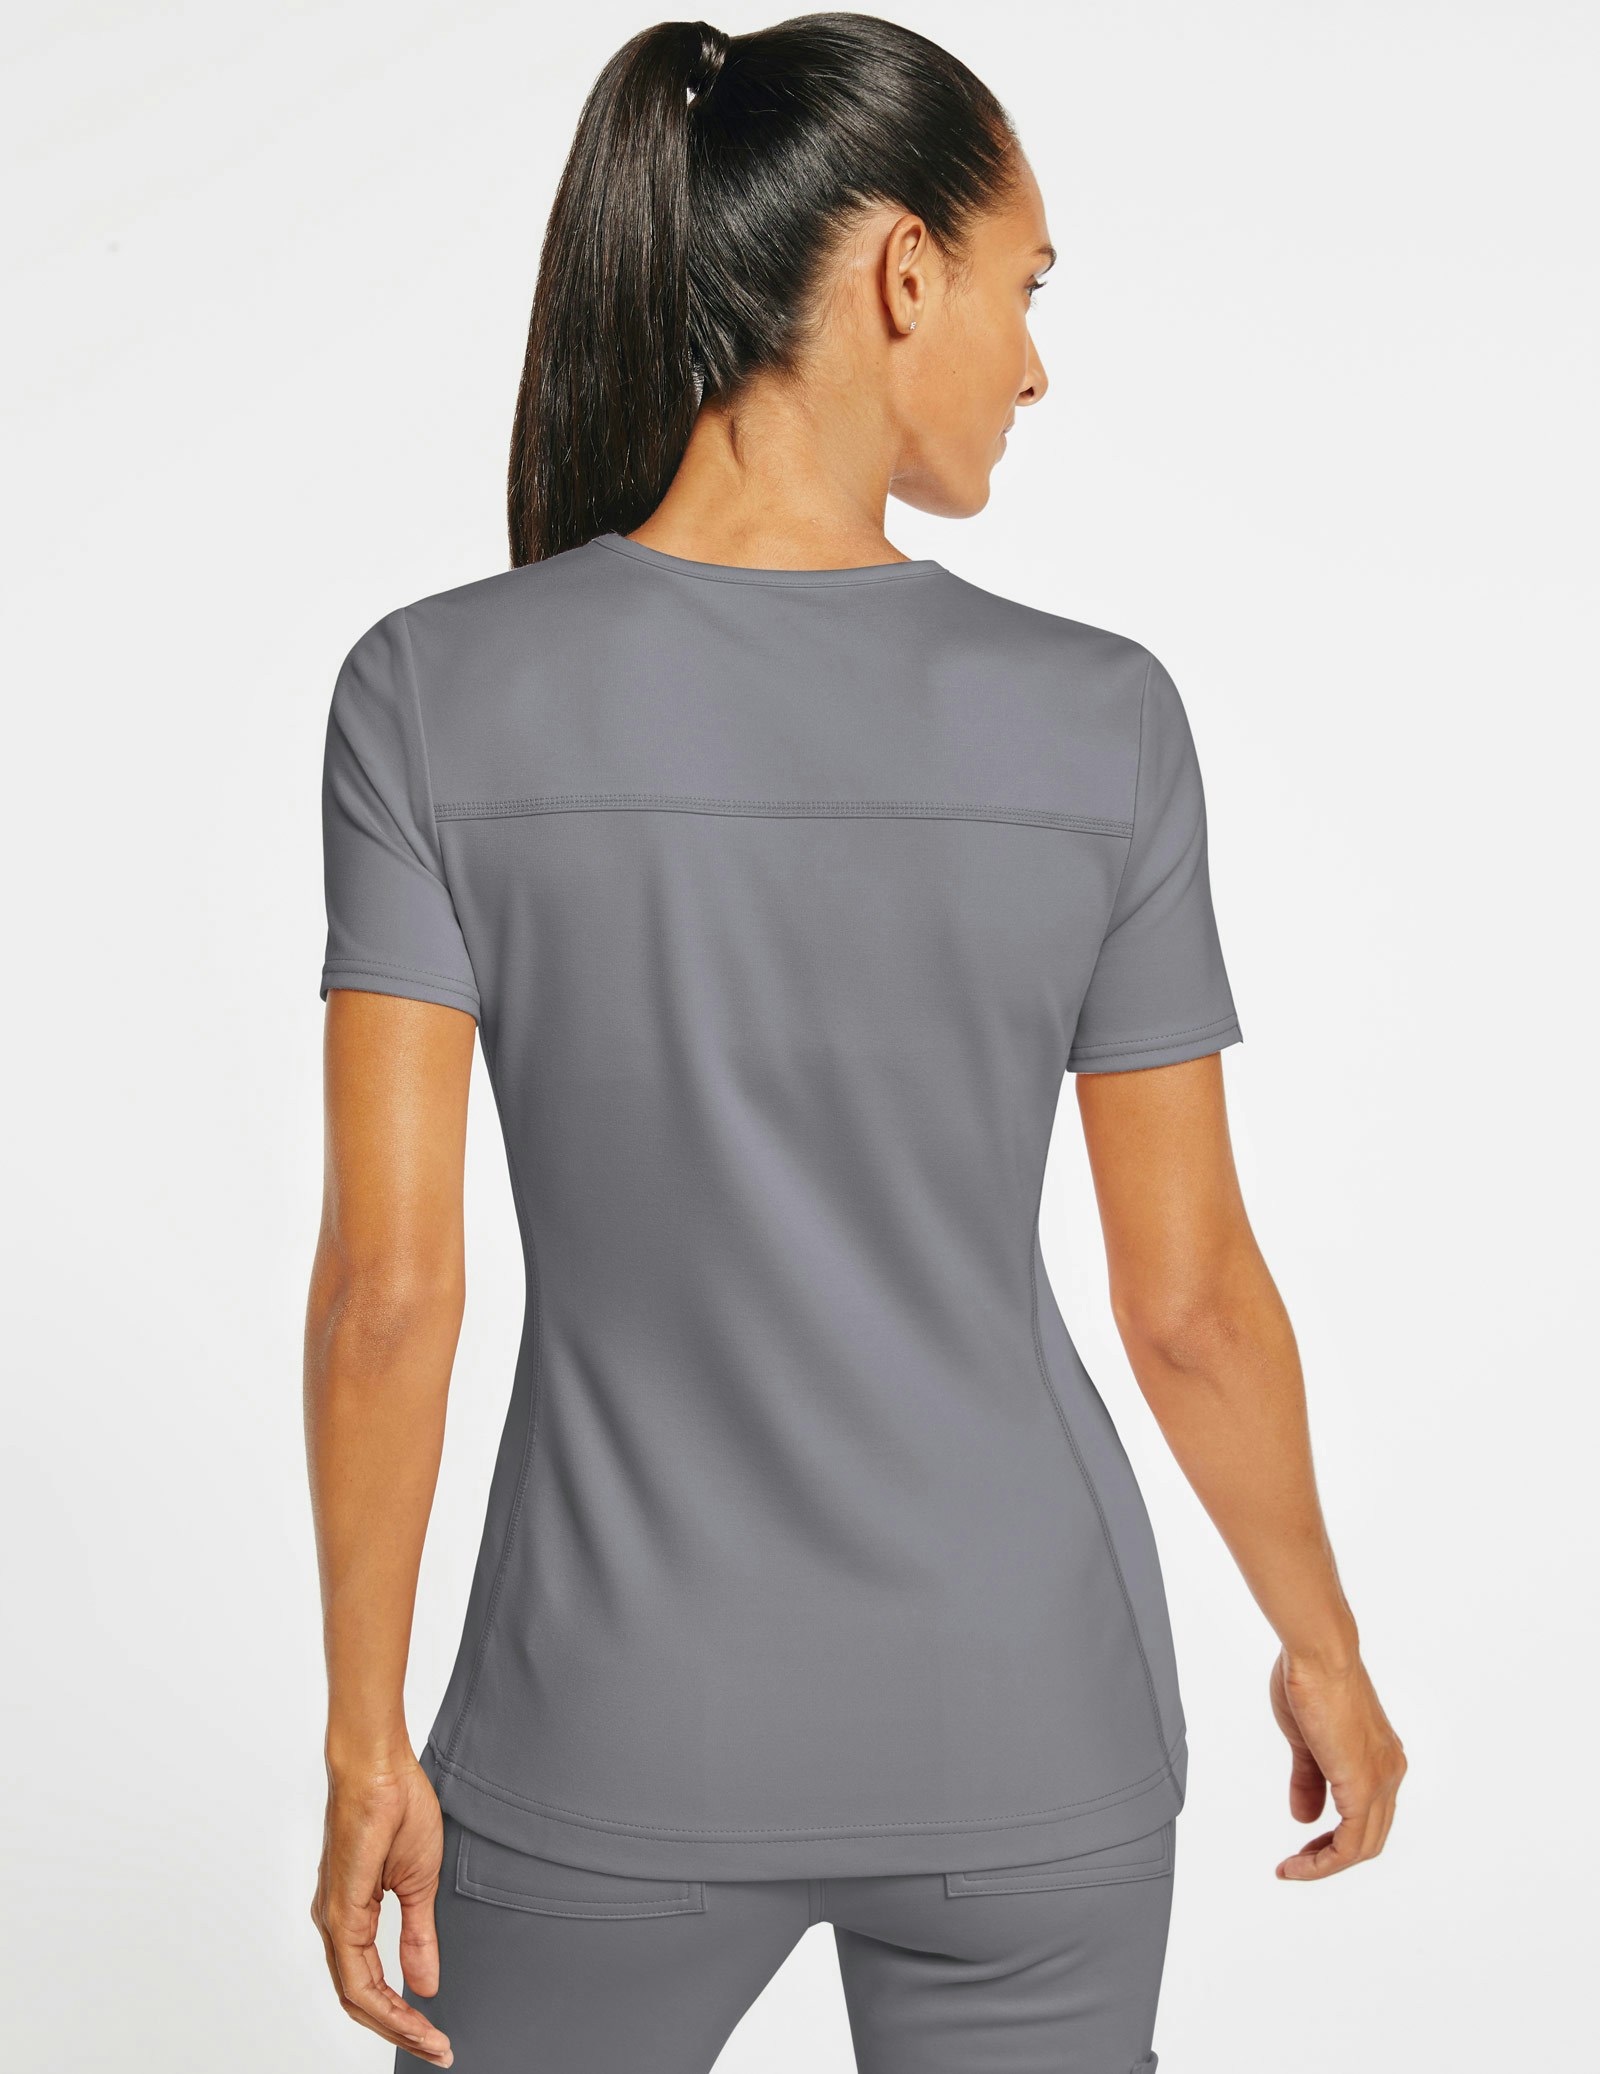 Women's 2-Pocket Side-Rib Top in Gray - Medical Scrubs by Jaanuu